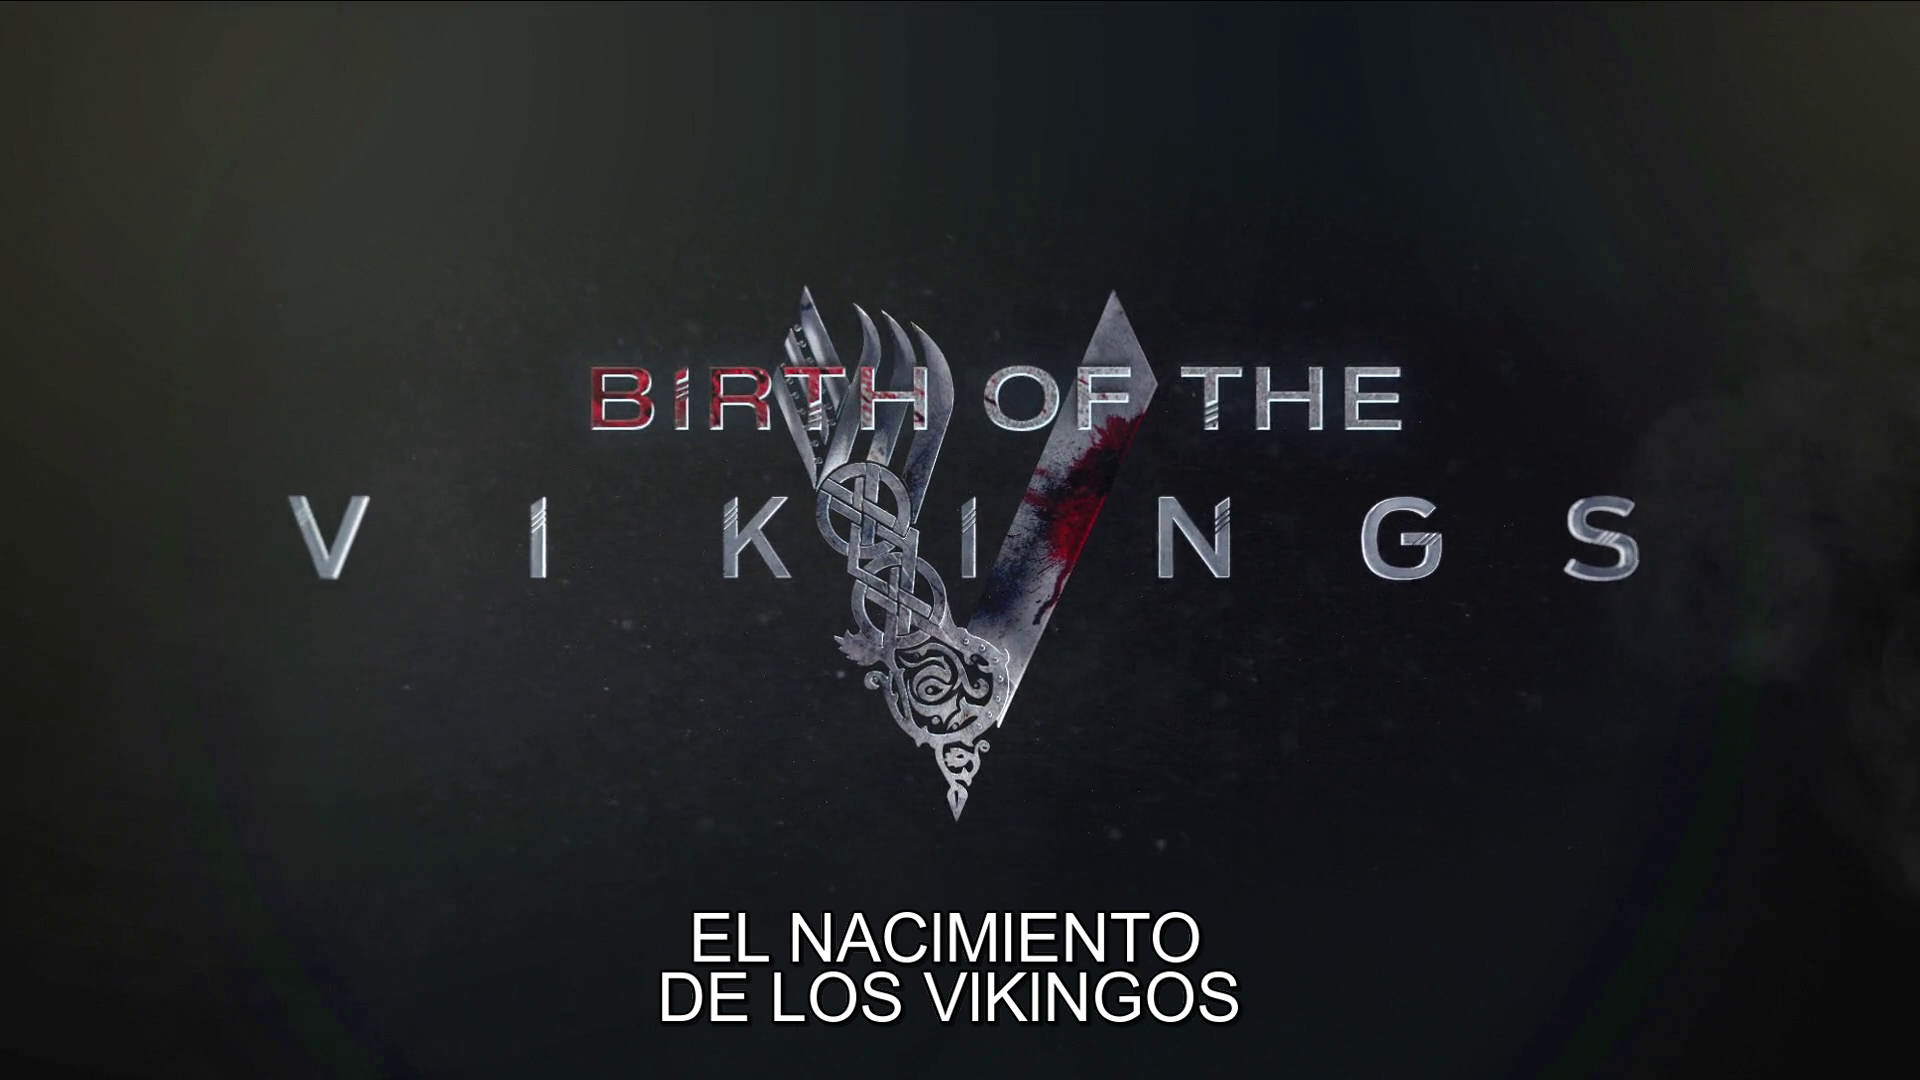 Vikings S01 [BDRip 1080p] [+Extras] 